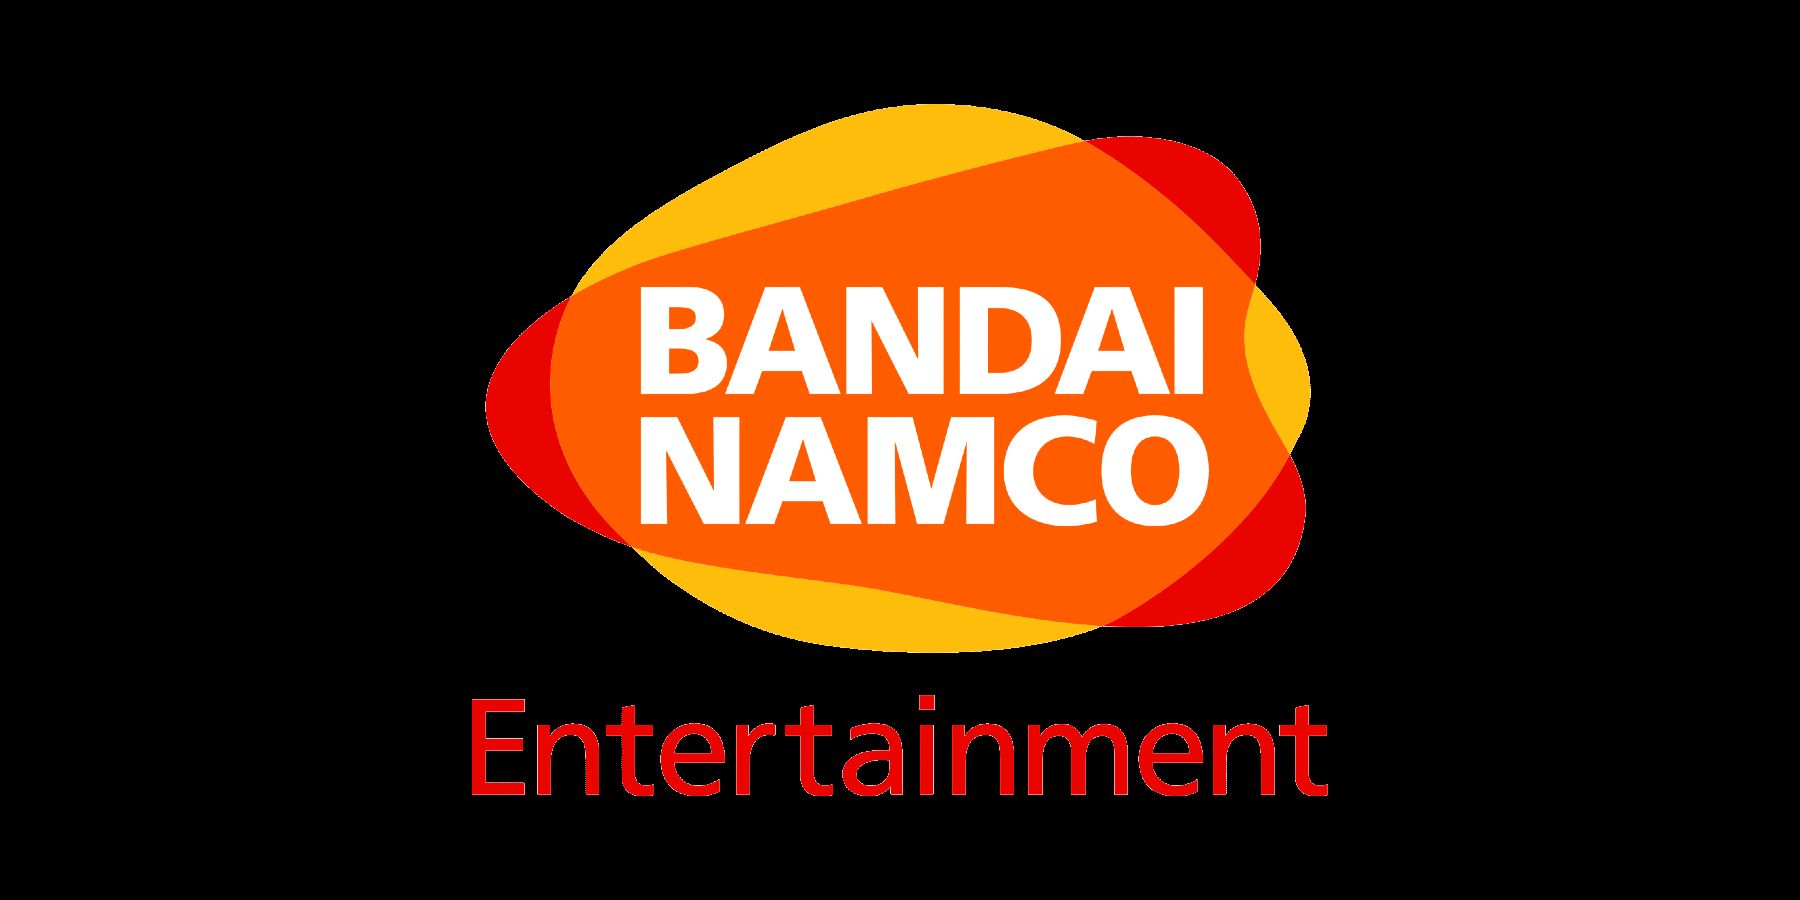 Bandai Namco tiene un nuevo logo